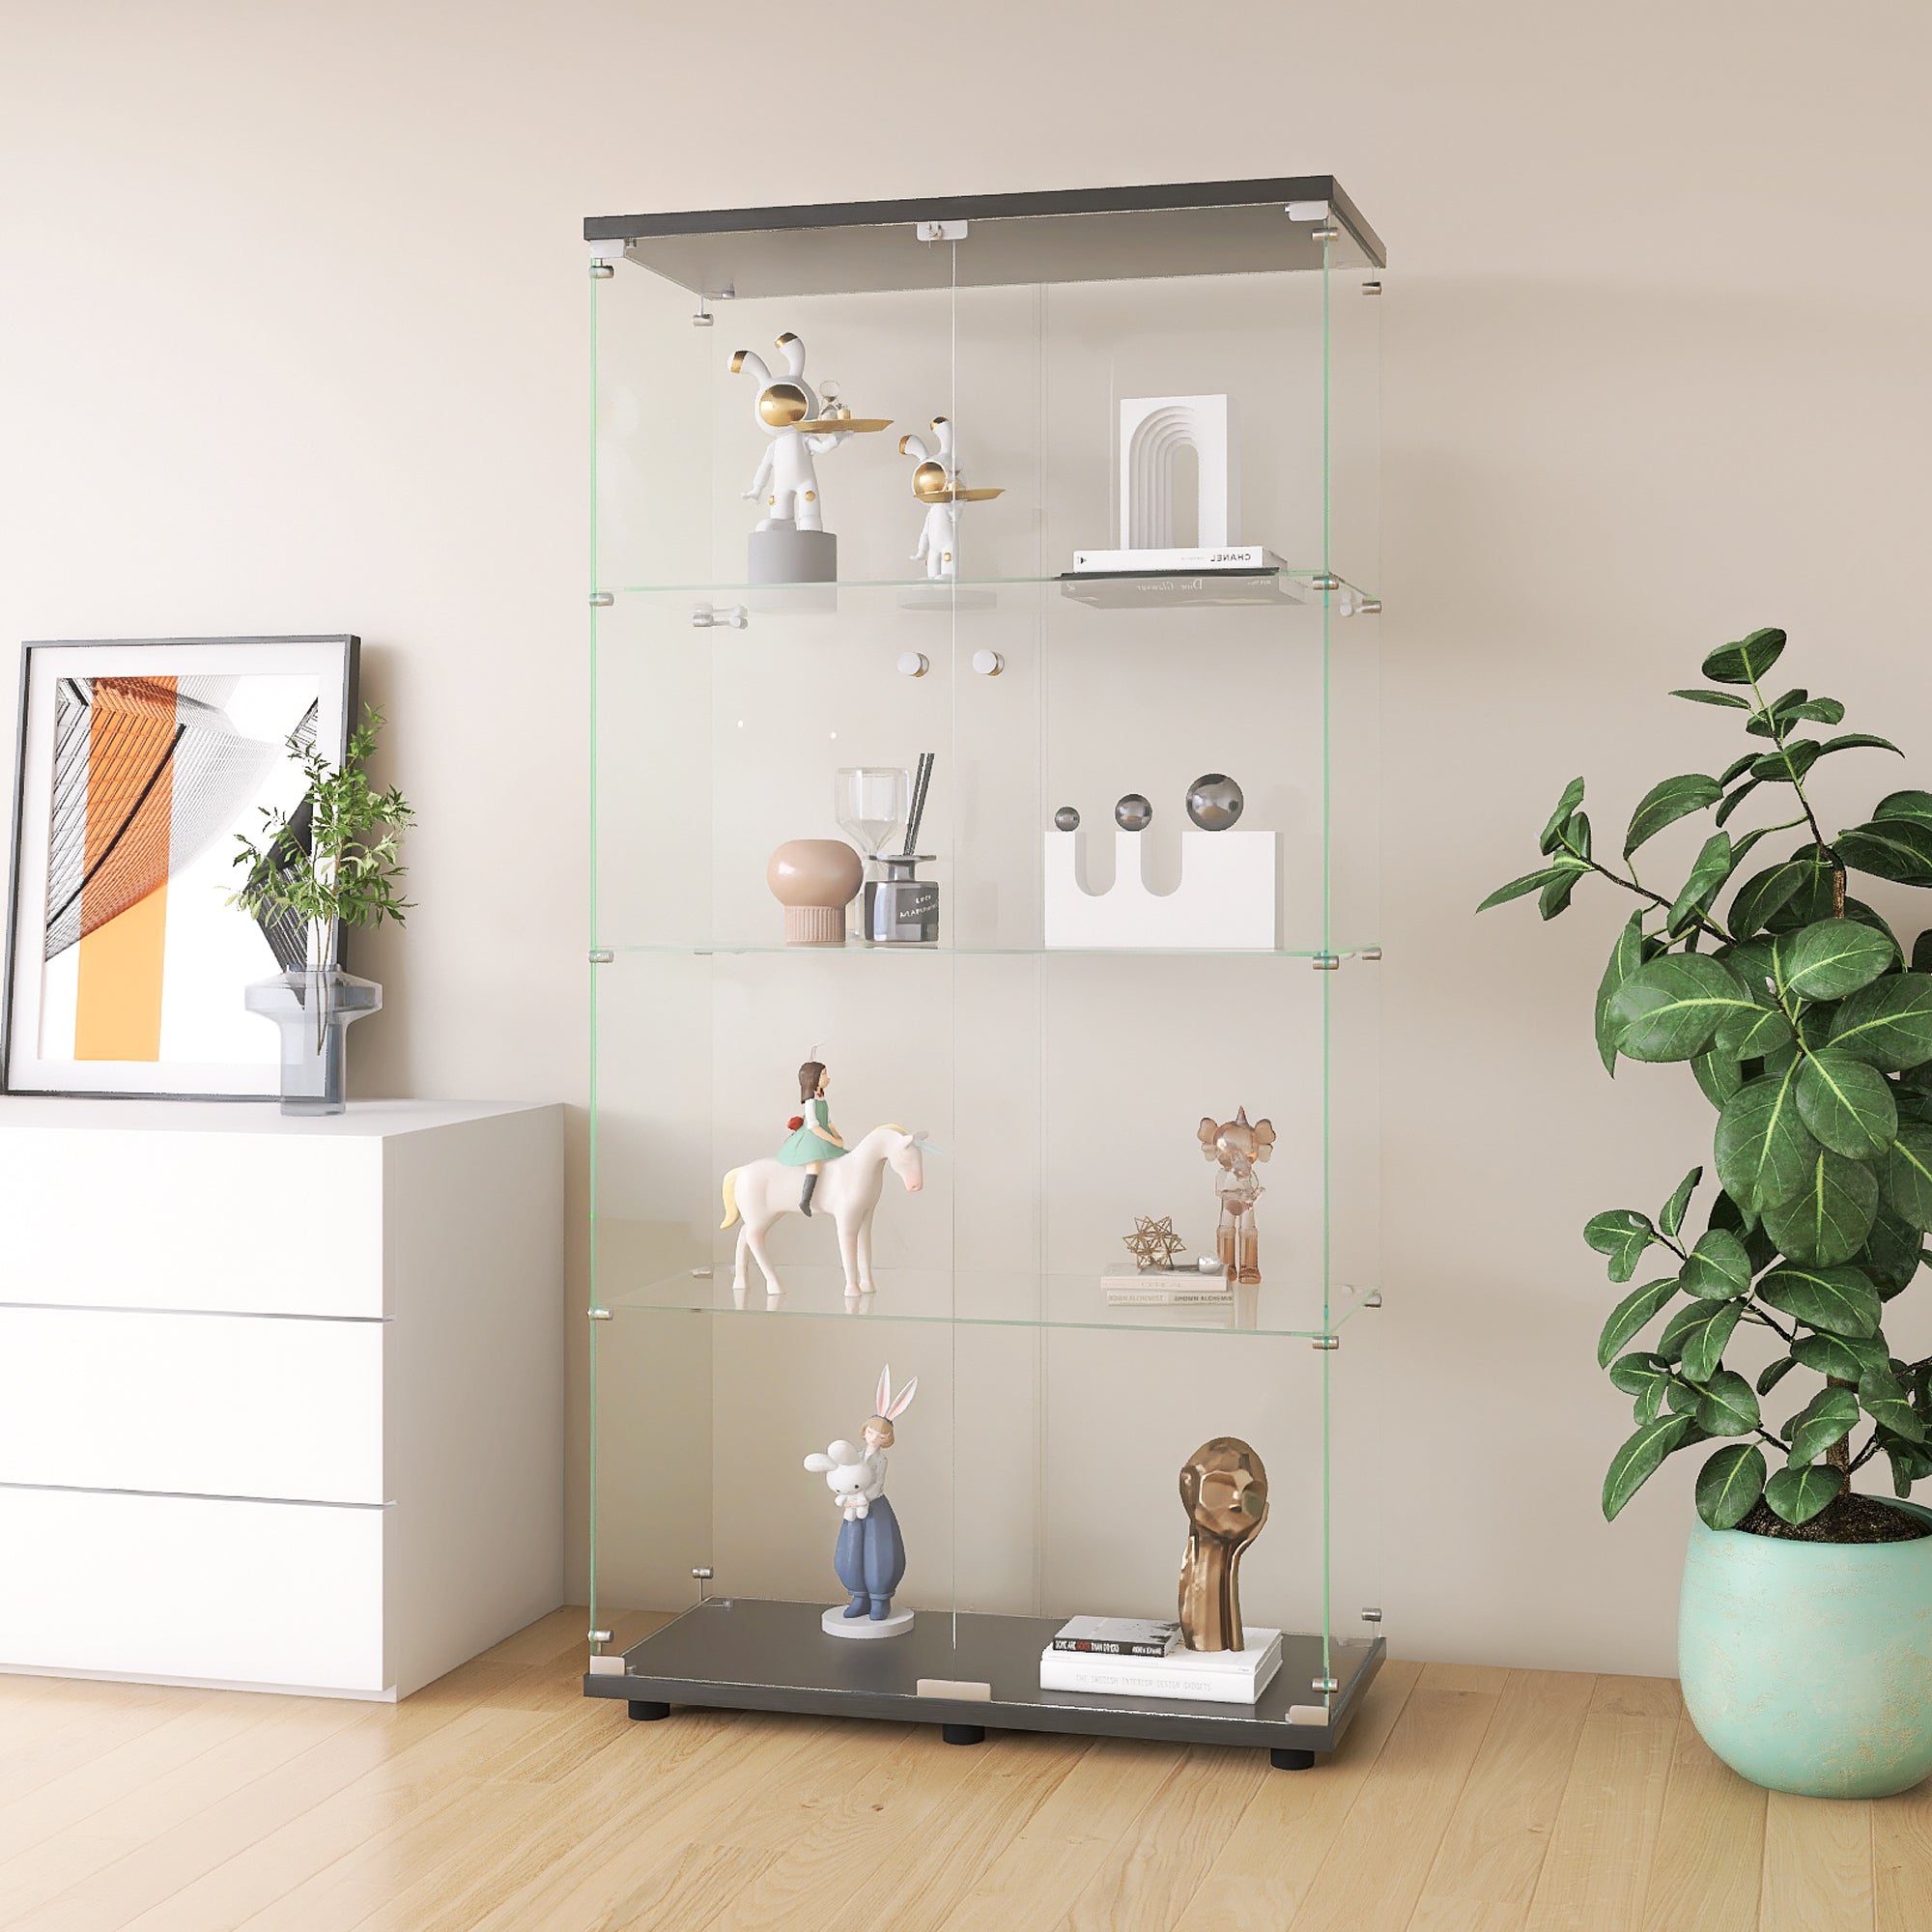 Black Two-Door Glass Display Cabinet: 4-Shelf Floor Standing Curio Bookshelf for Living Room, Bedroom, Office